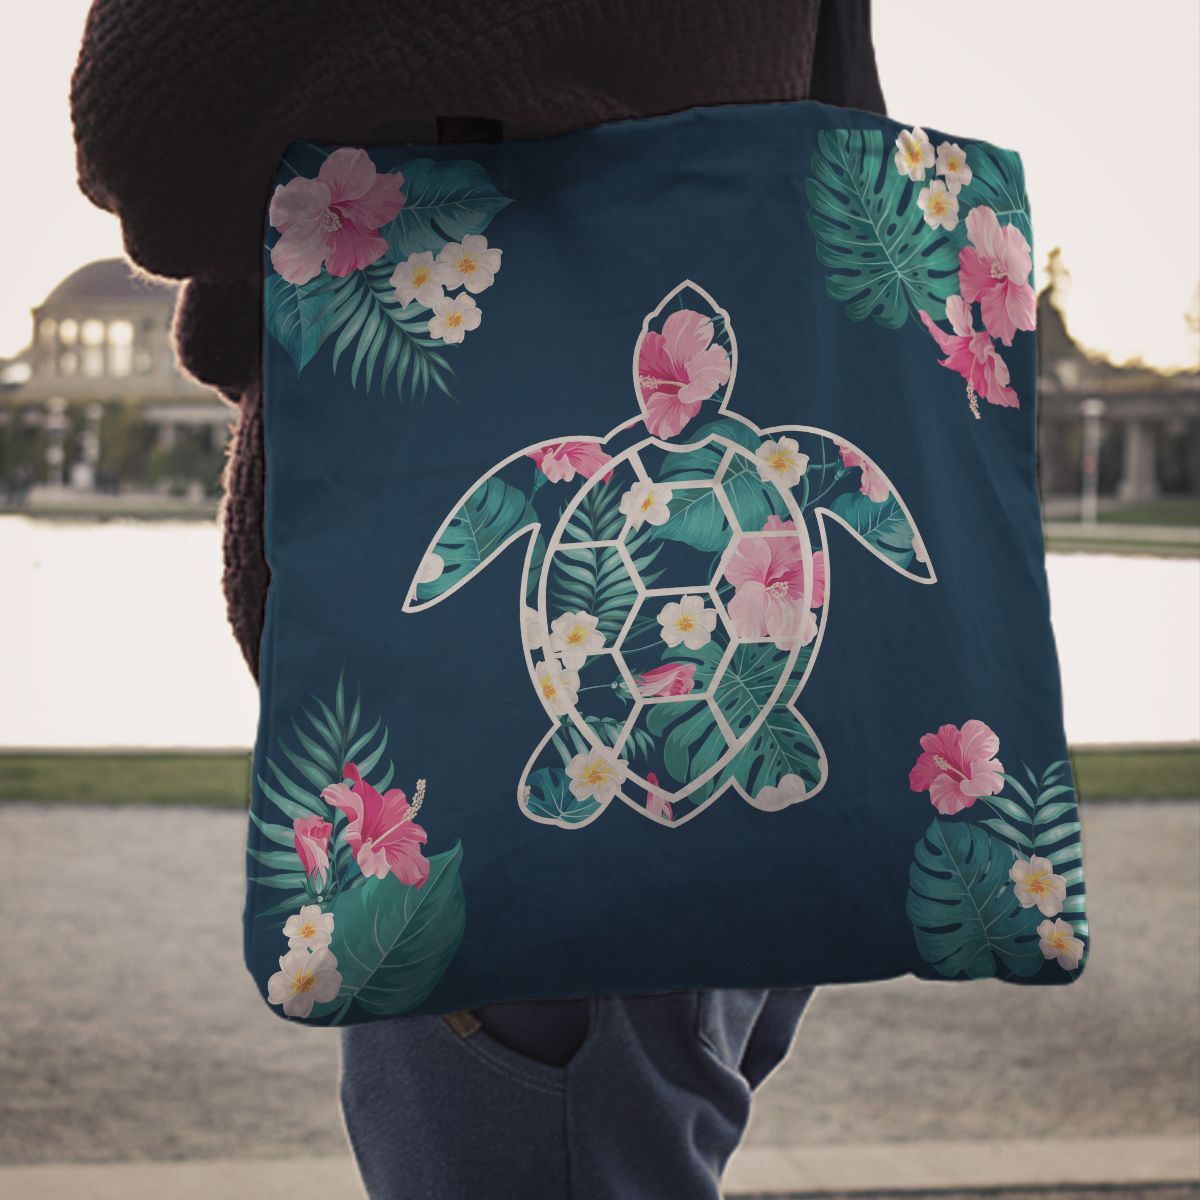 Flower Sea Turtle - Tote Bag - the ocean vibe Ocean Apparel